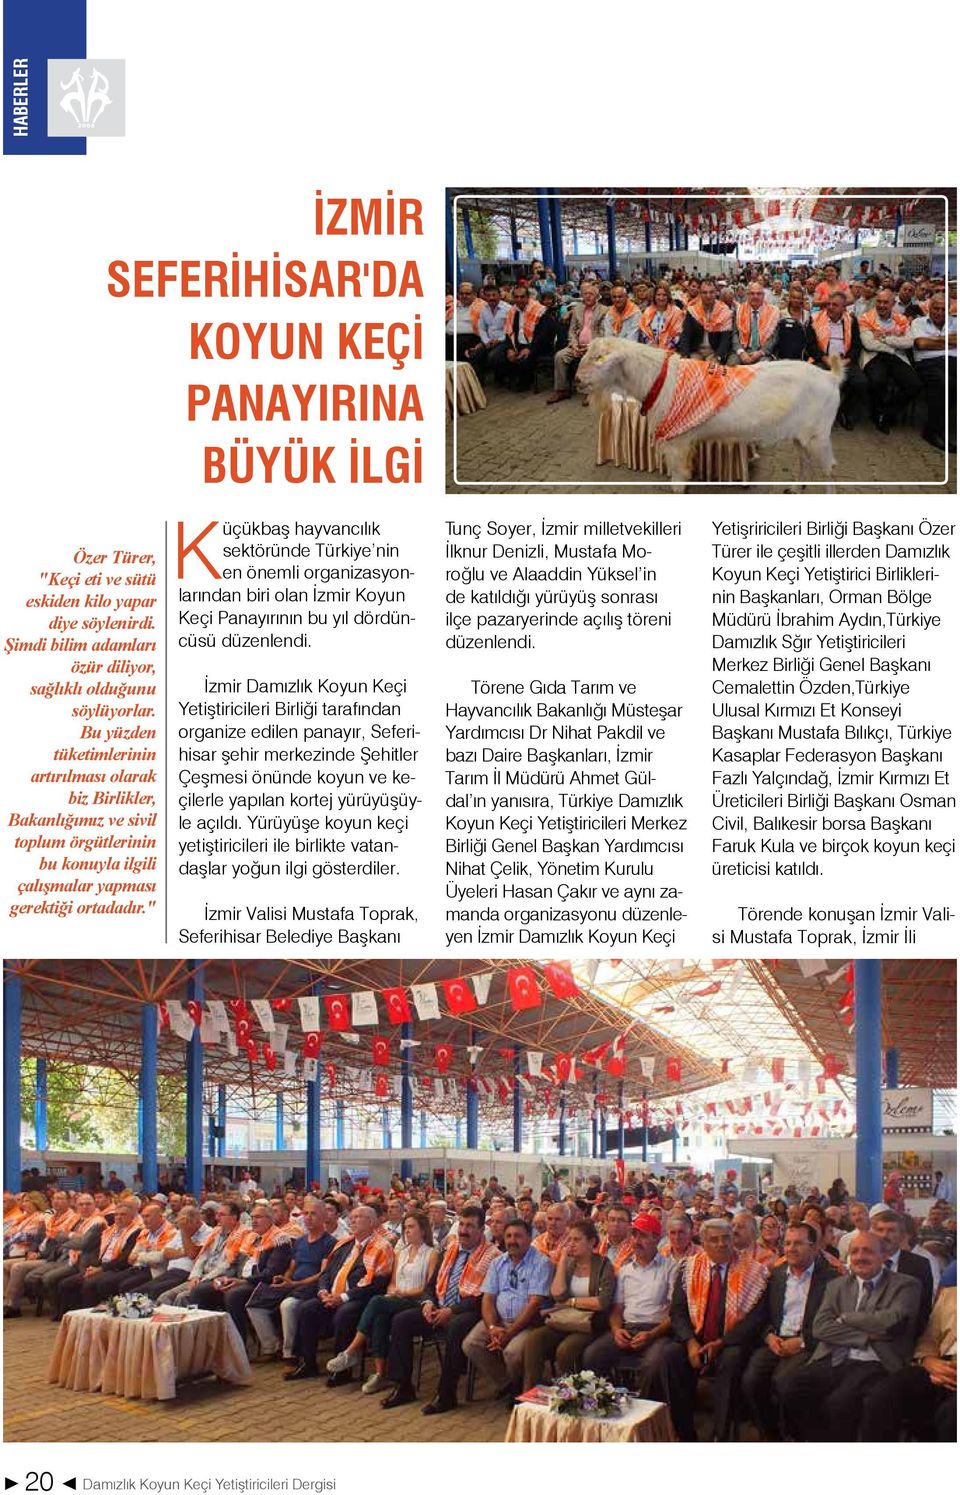 " Küçükbaş hayvancılık sektöründe Türkiye nin en önemli organizasyonlarından biri olan İzmir Koyun Keçi Panayırının bu yıl dördüncüsü düzenlendi.